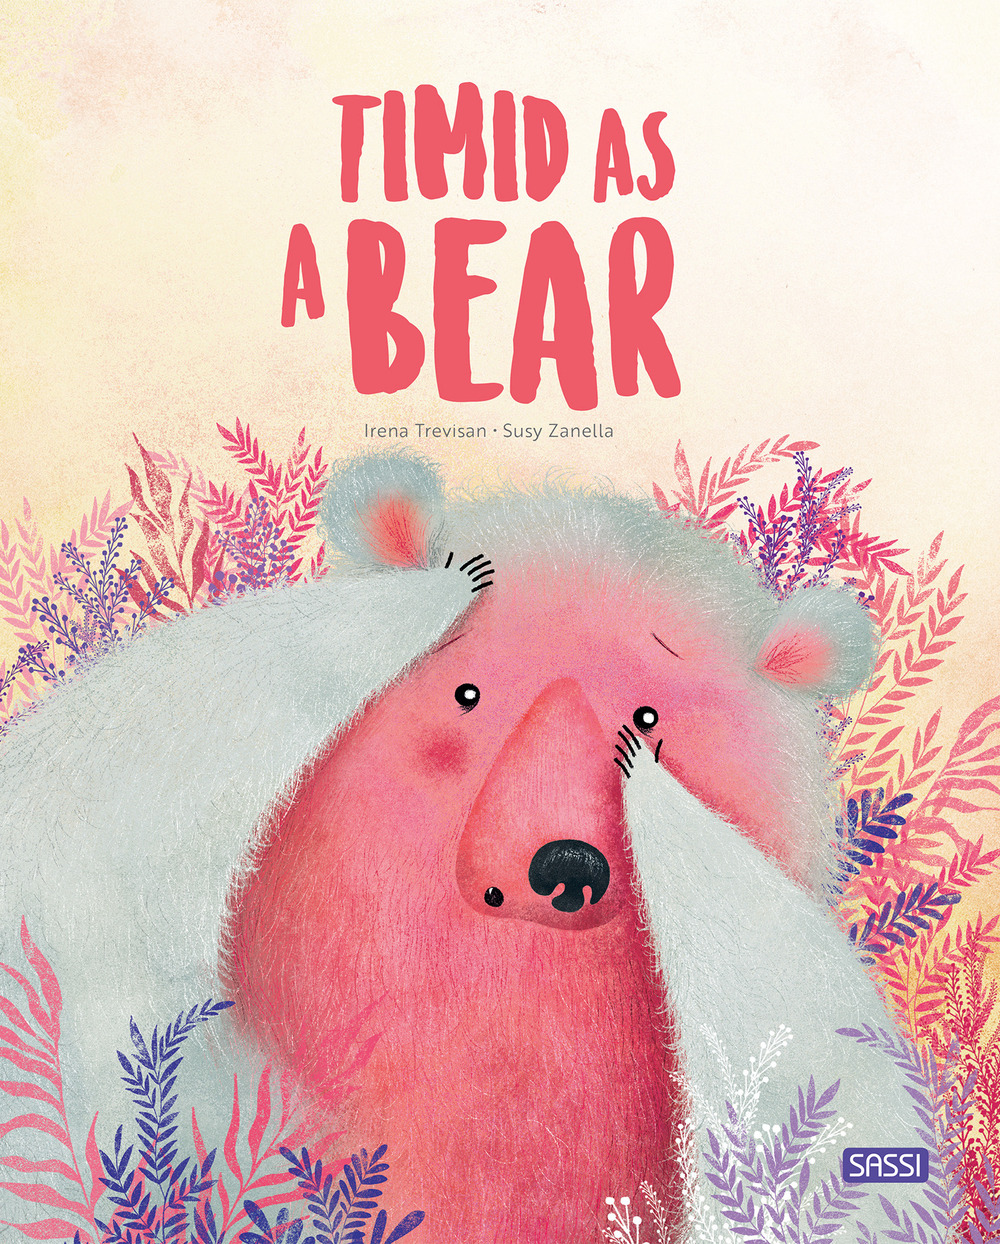 Timid as a bear. Ediz. a colori